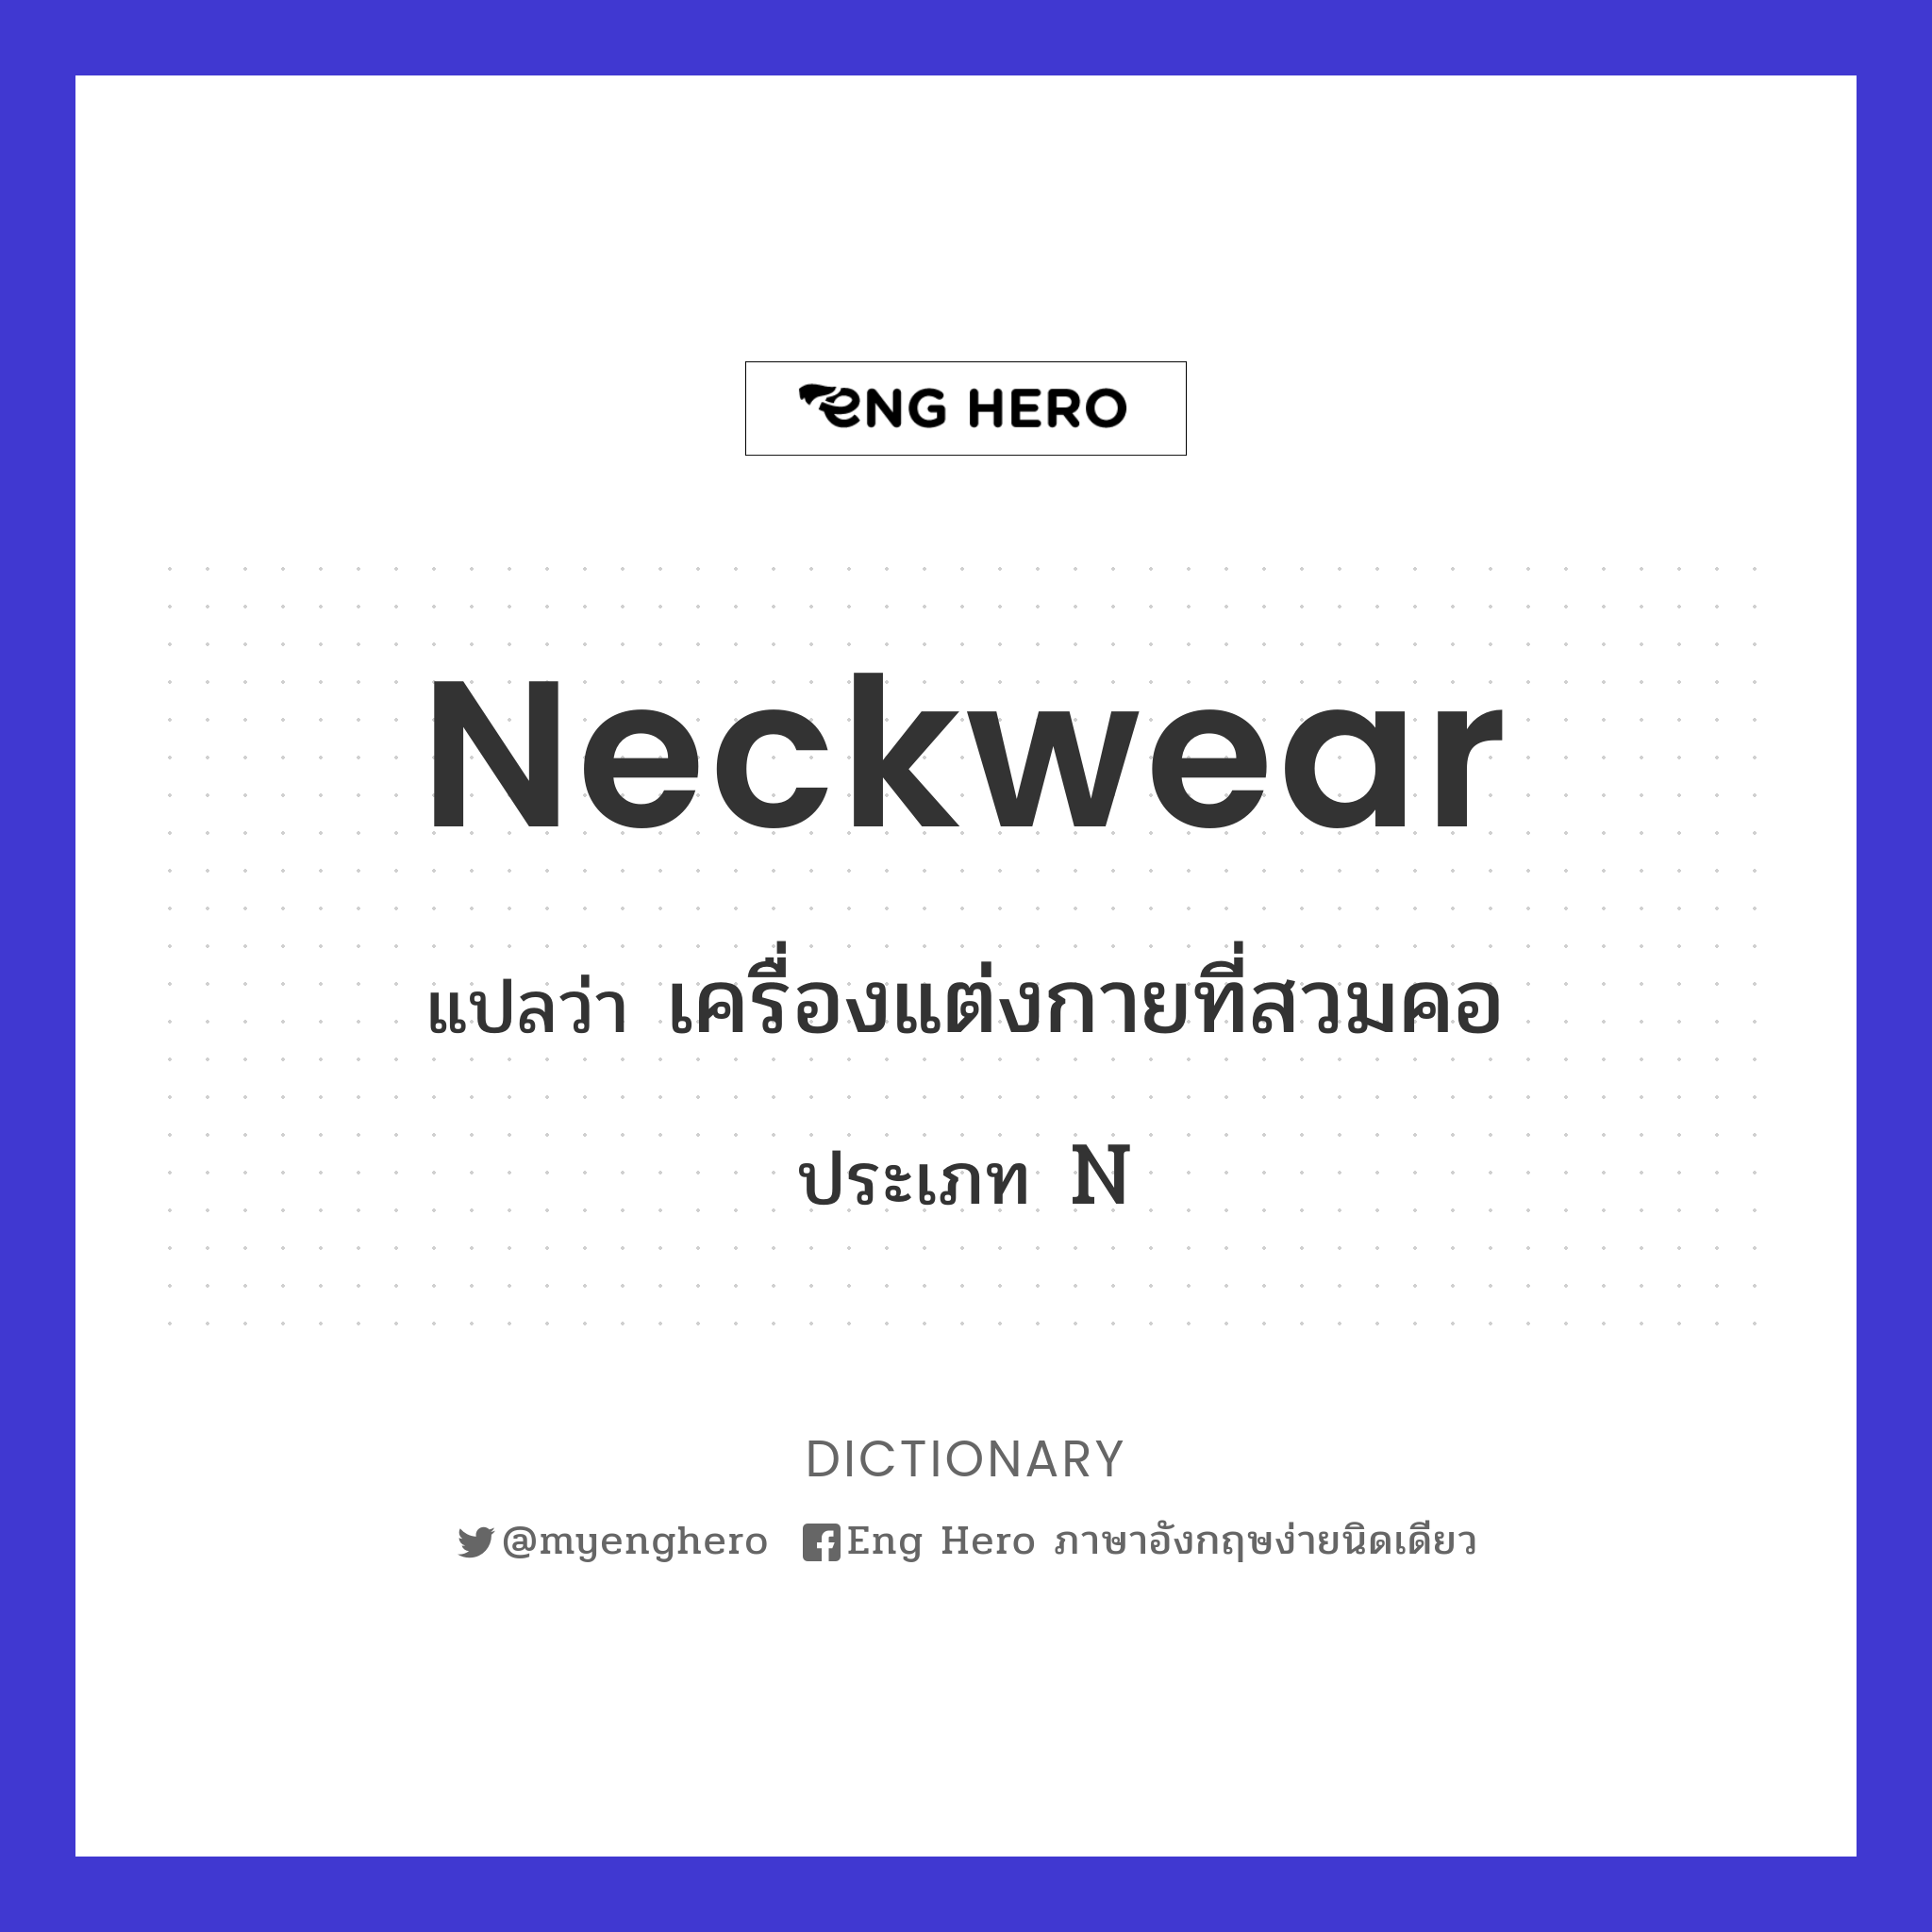 neckwear